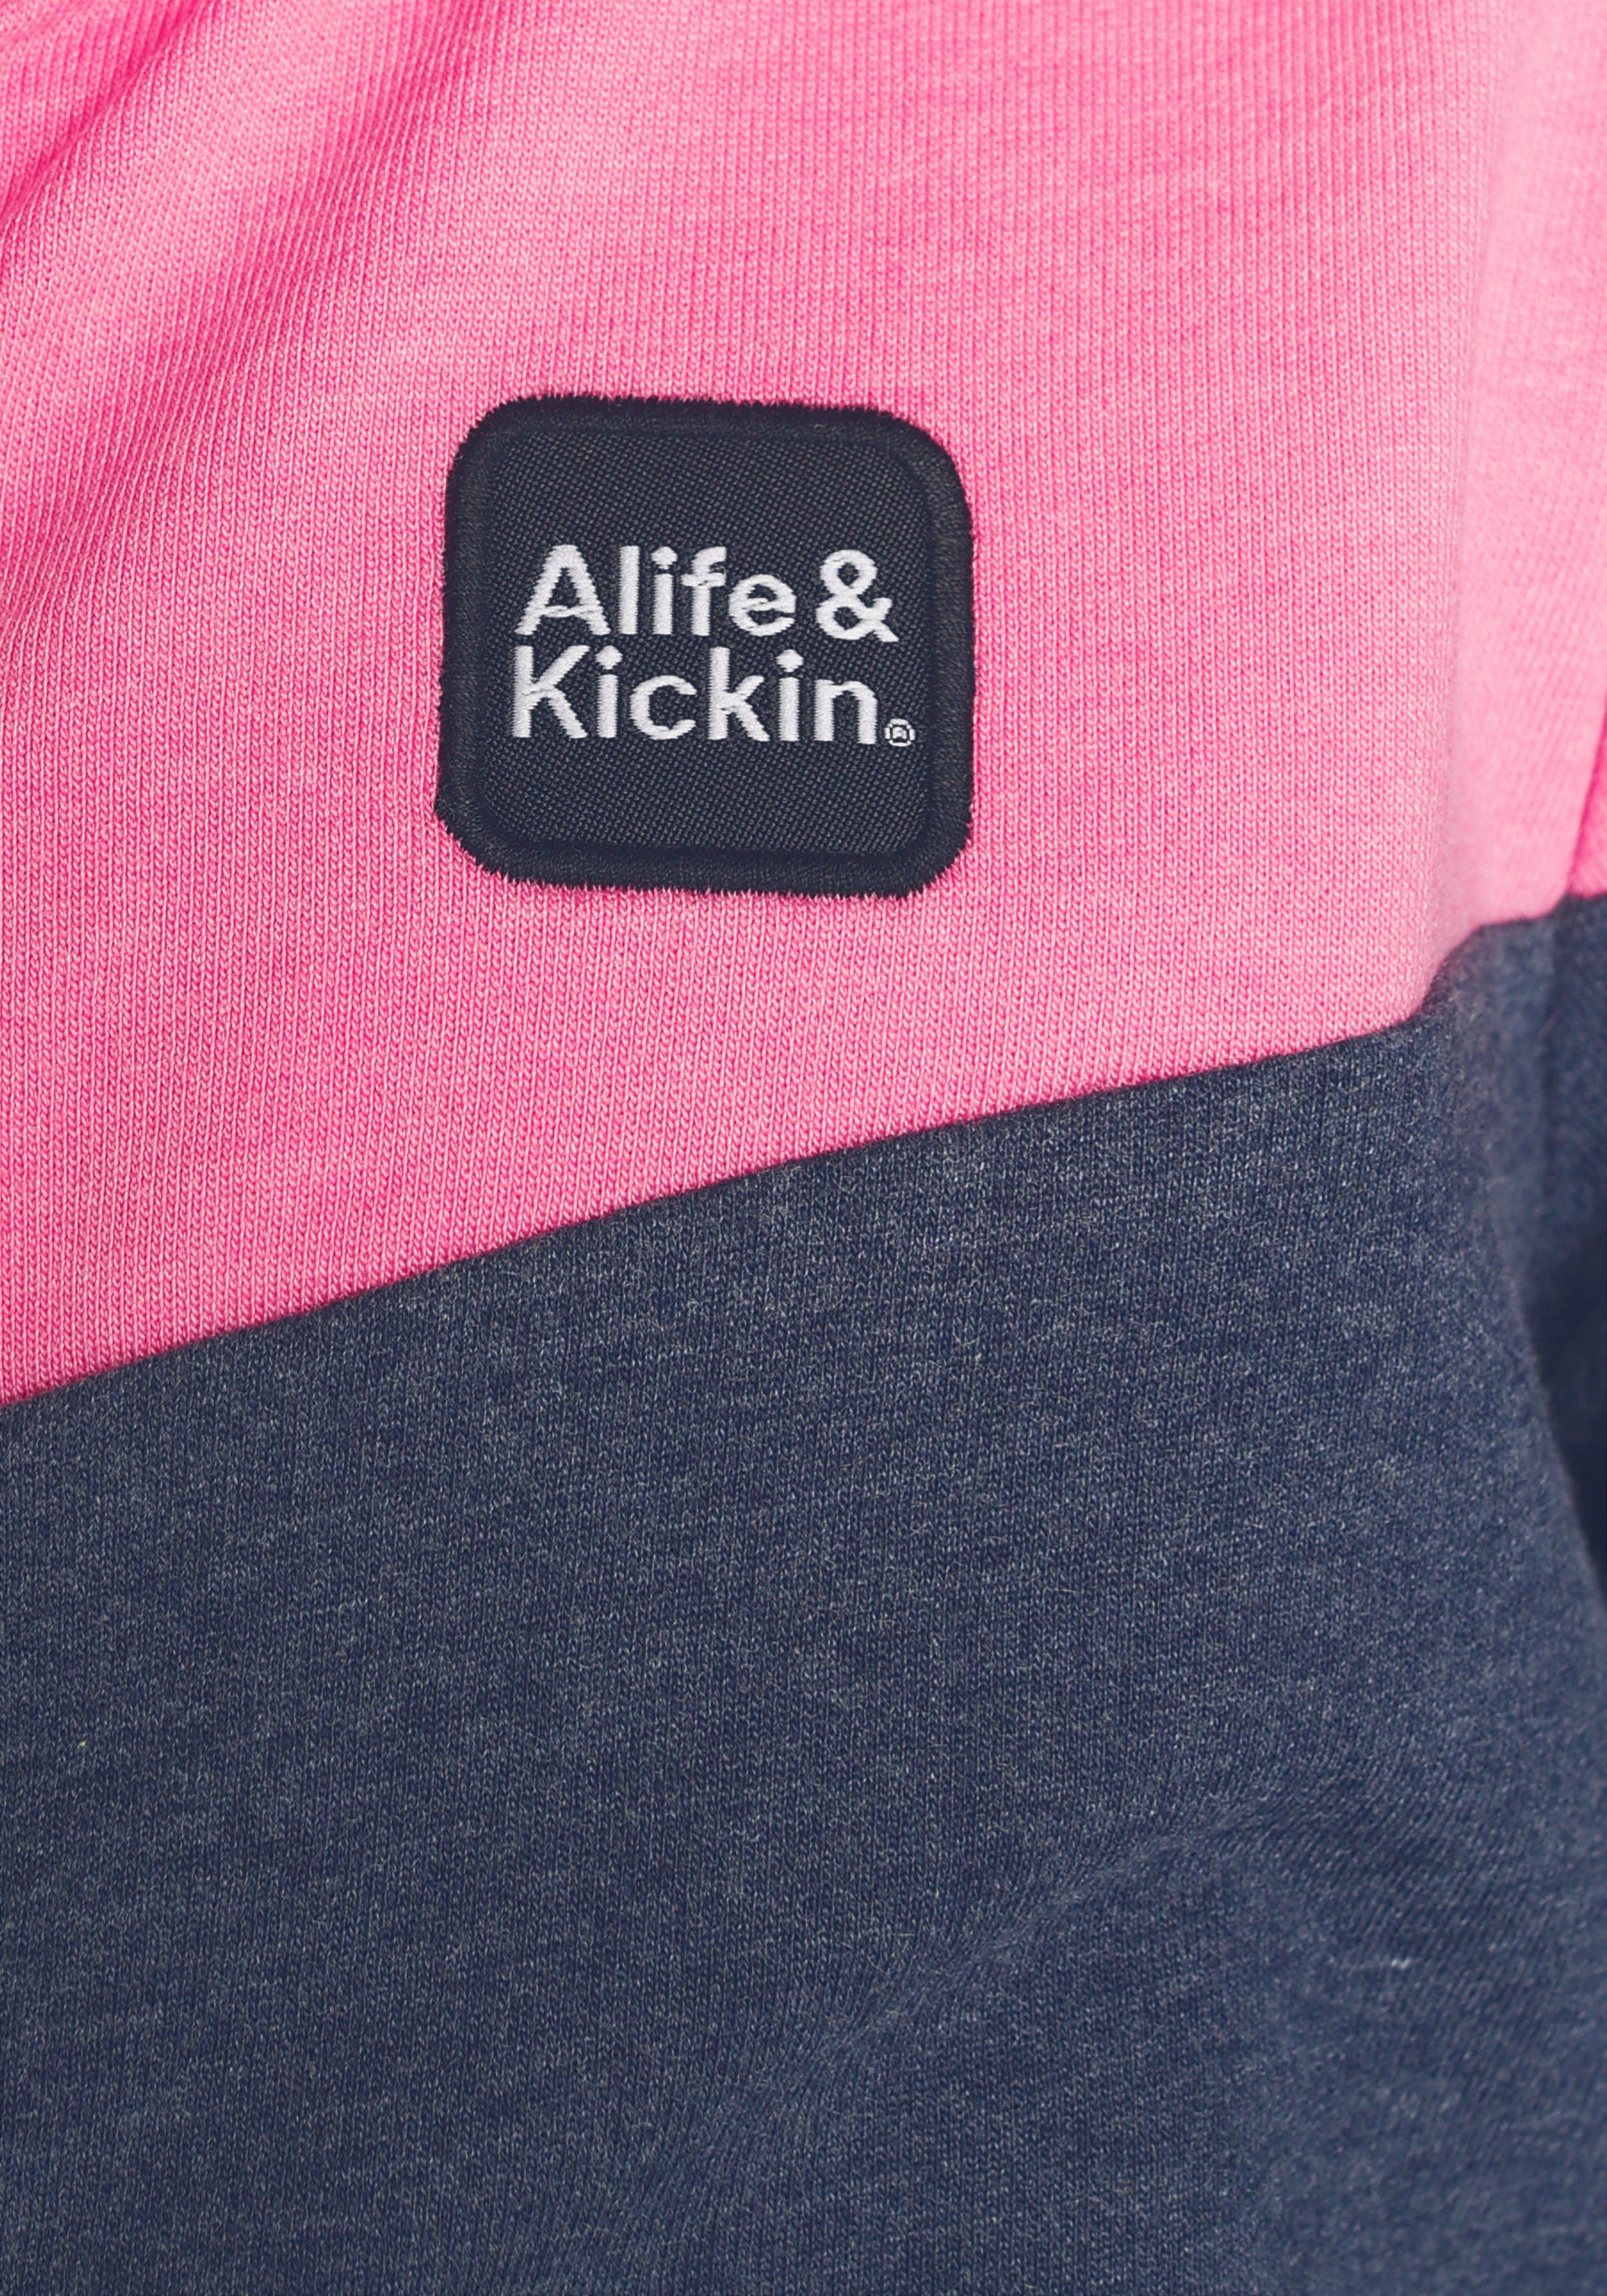 mit coolem Kickin für & Colourblocking Kickin & Alife Alife MARKE! Kids. Sweatjacke NEUE